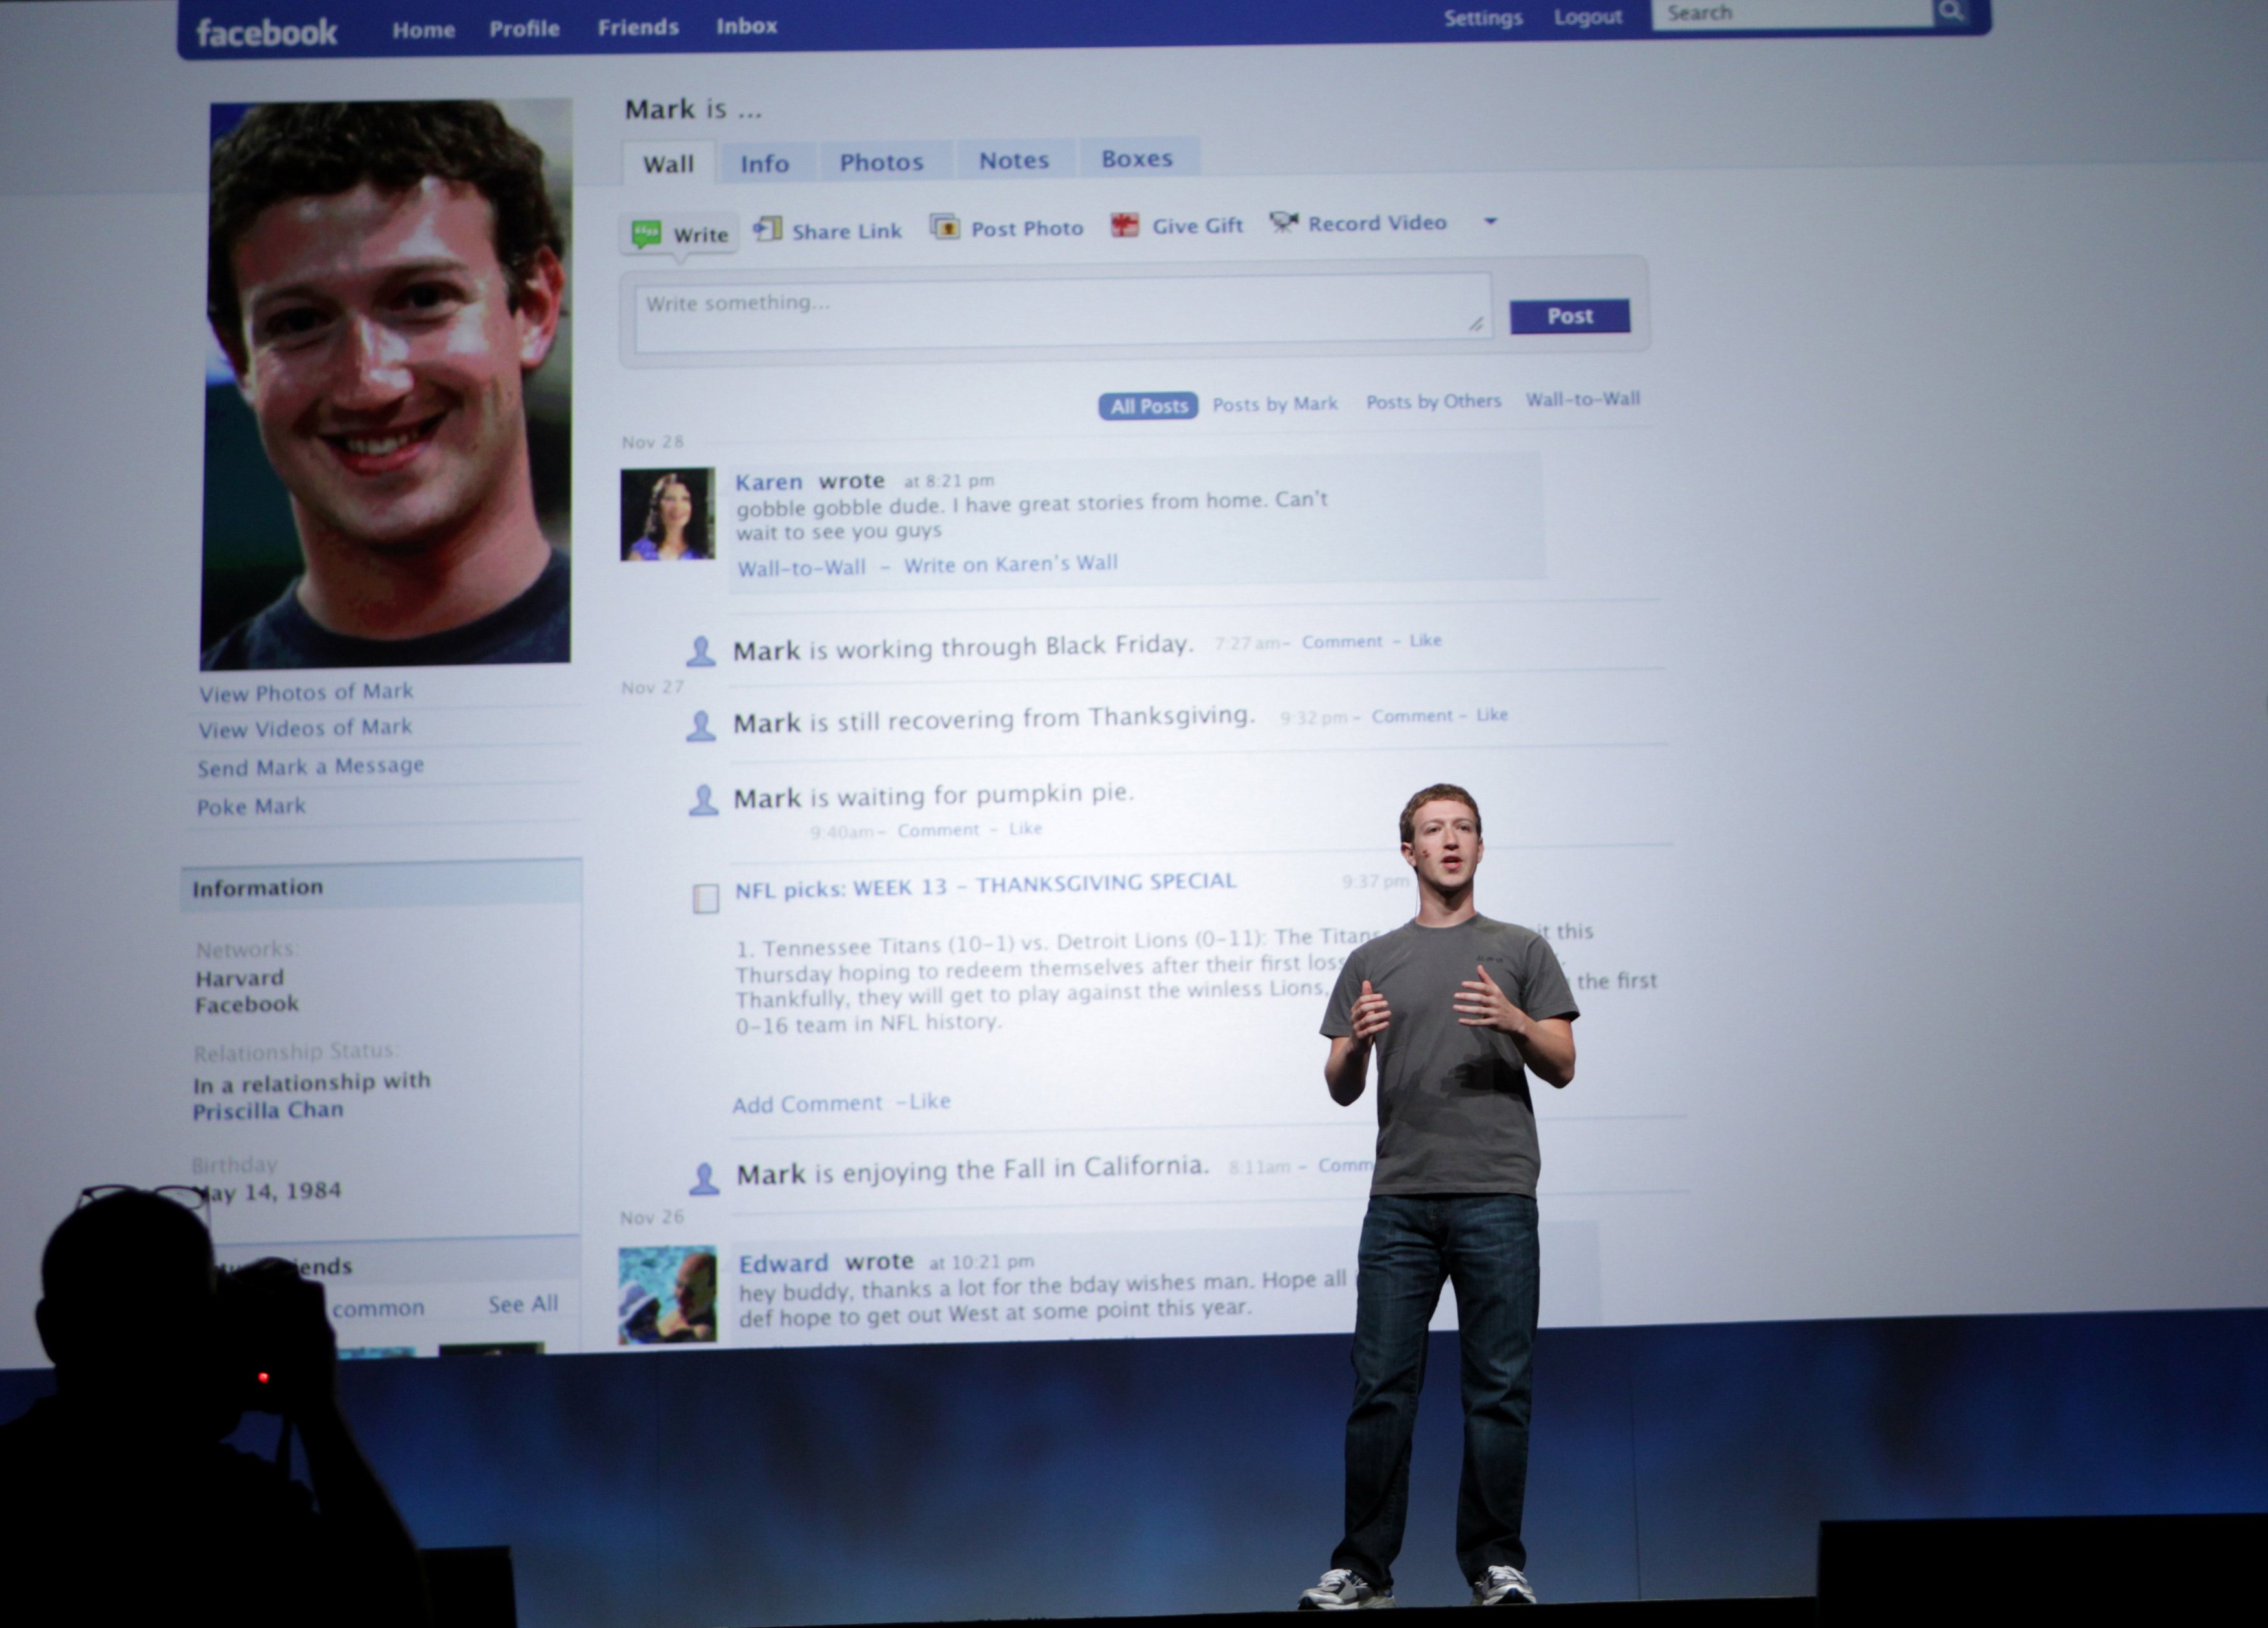 Σε ριζικό «λίφτινγκ» προχωρά το Facebook για να προλάβει τους ανταγωνιστές του